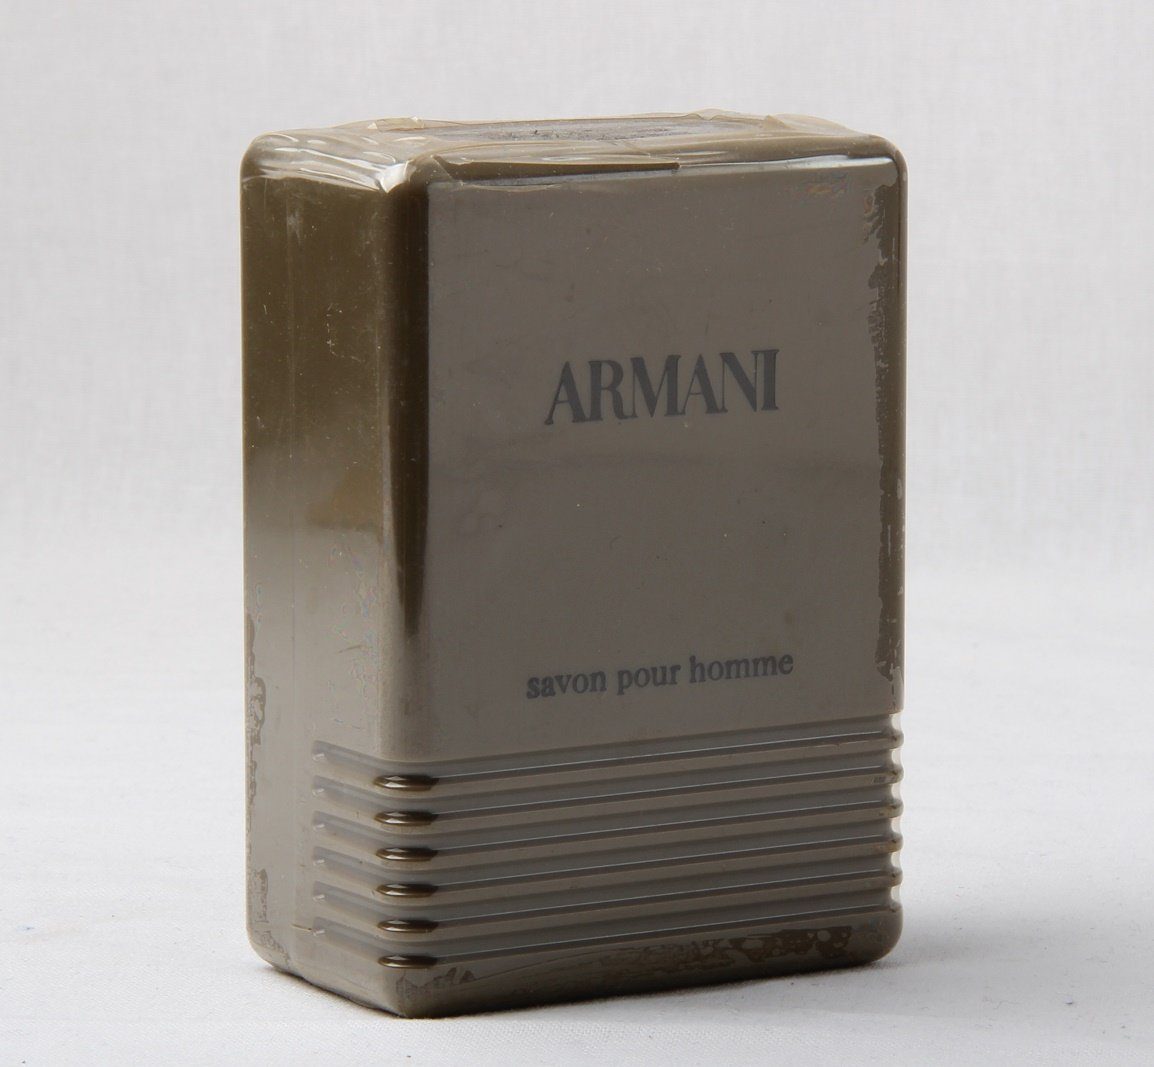 Giorgio Pour / Armani Savon Eau Seife Homme Armani 150g Handseife